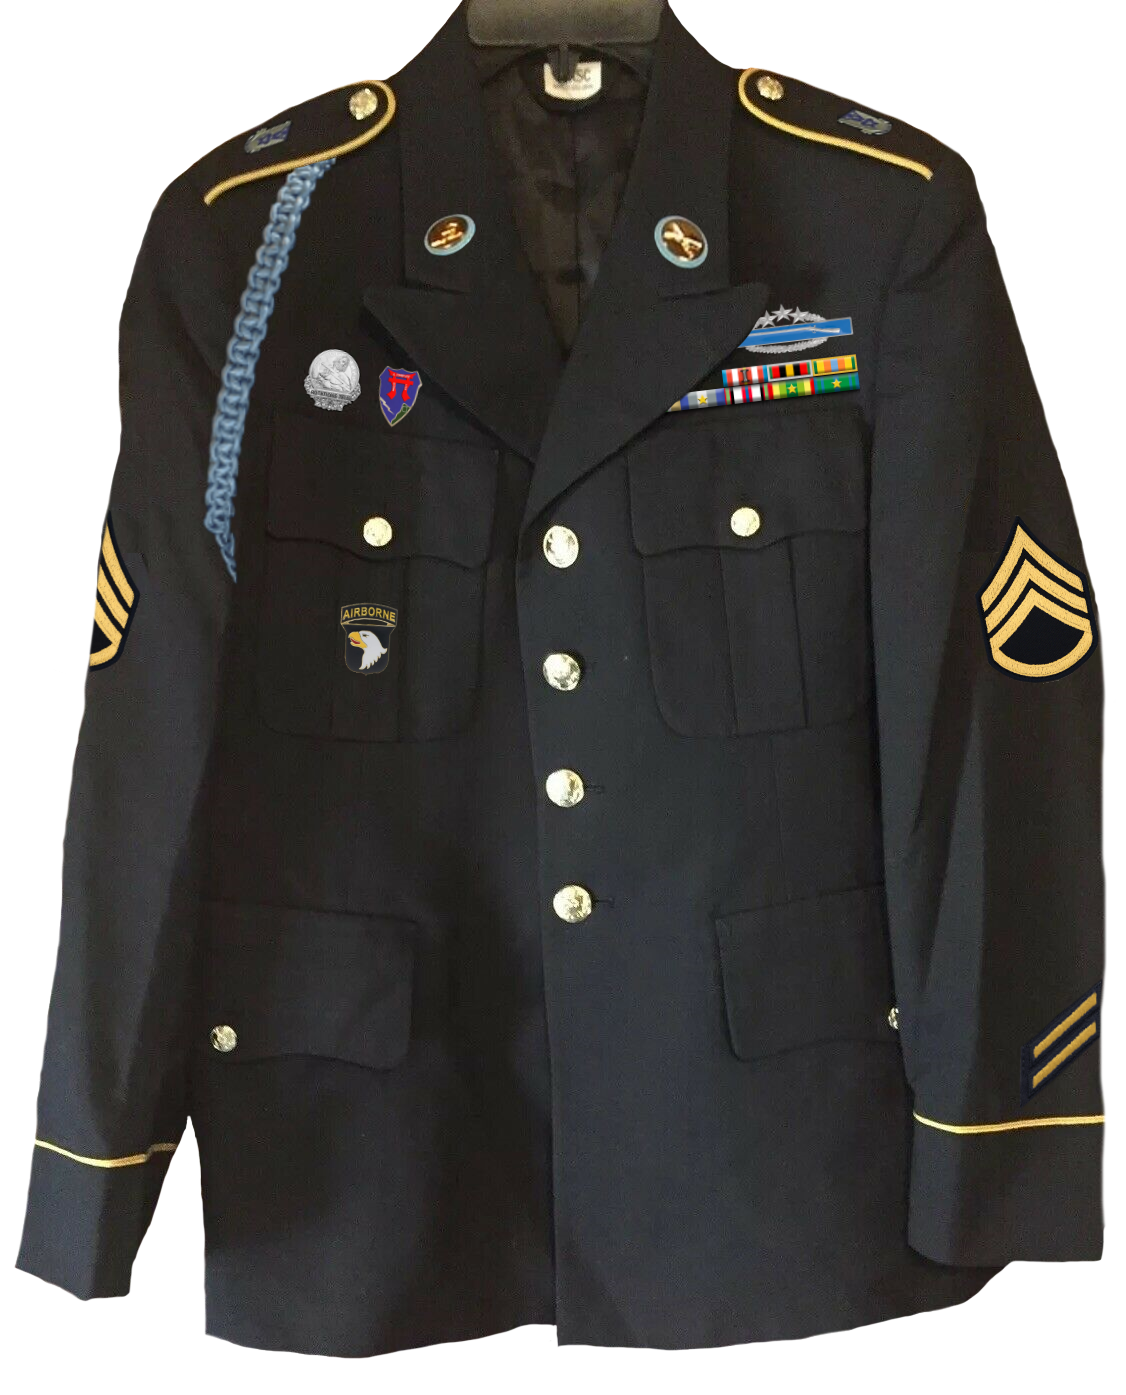 Die Uniform von Asathor456